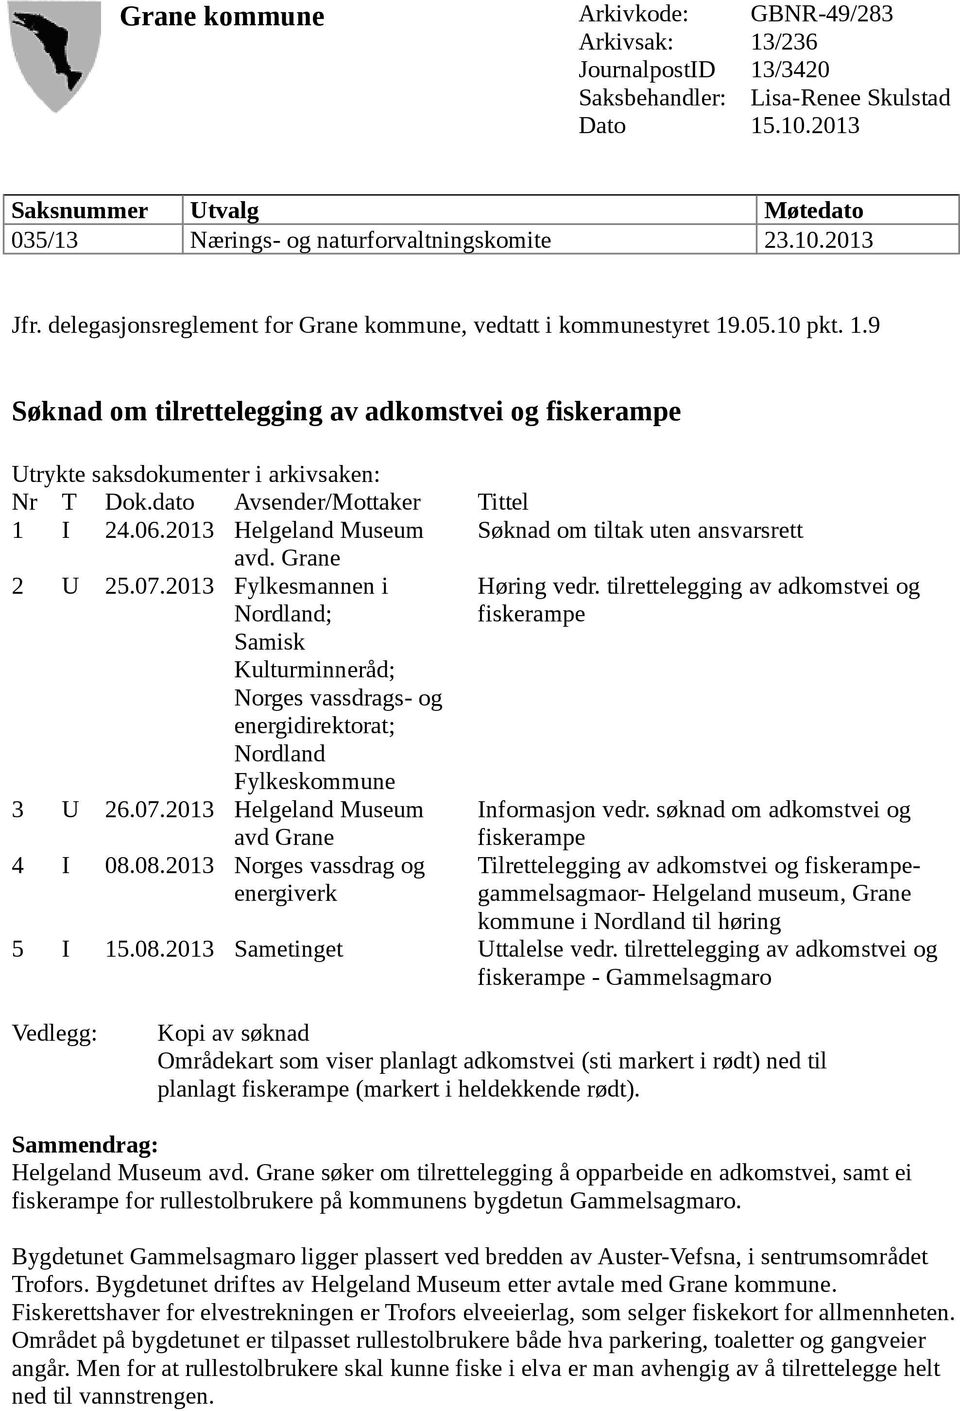 dato Avsender/Mottaker Tittel 1 I 24.06.2013 Helgeland Museum Søknad om tiltak uten ansvarsrett avd. Grane 2 U 25.07.2013 Fylkesmannen i Nordland; Høring vedr.